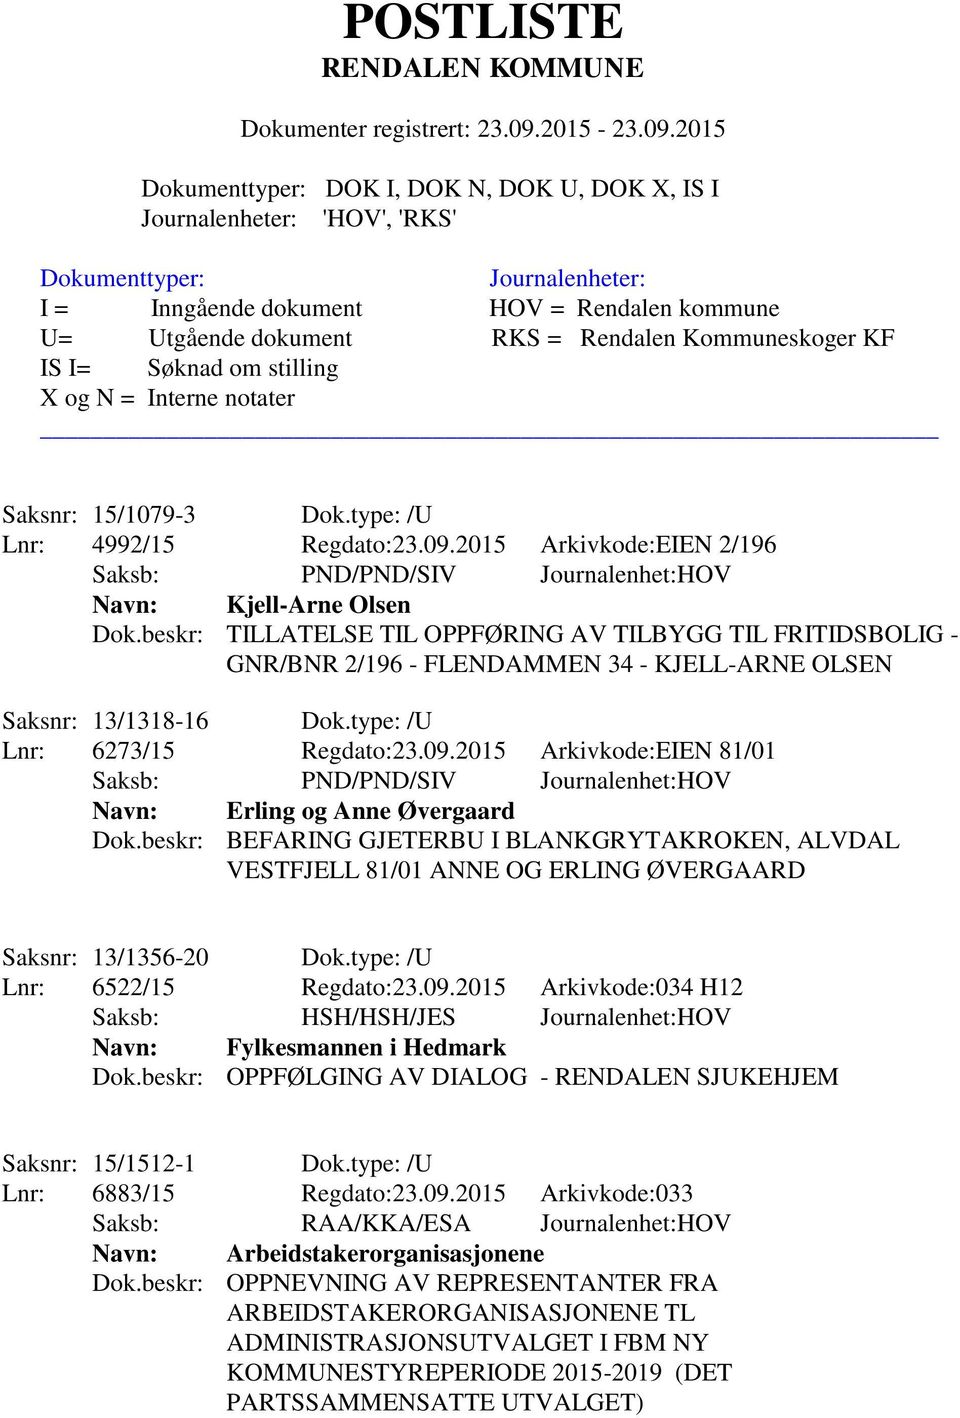 2015 Arkivkode:EIEN 81/01 Navn: Erling og Anne Øvergaard Dok.beskr: BEFARING GJETERBU I BLANKGRYTAKROKEN, ALVDAL VESTFJELL 81/01 ANNE OG ERLING ØVERGAARD Saksnr: 13/1356-20 Dok.